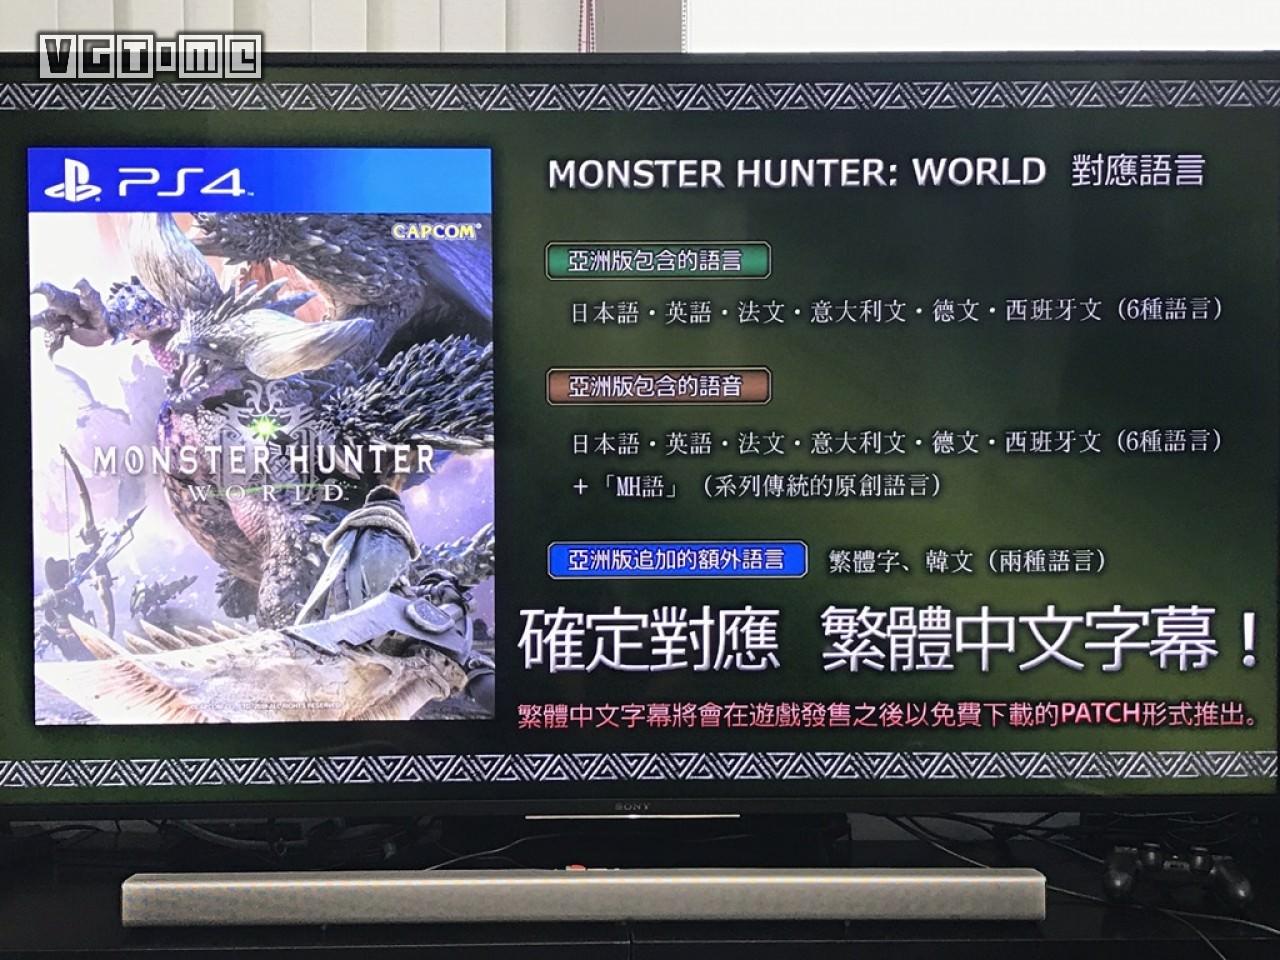 怪物猎人世界 中文补丁争取同步推出中文实机游戏截图公布